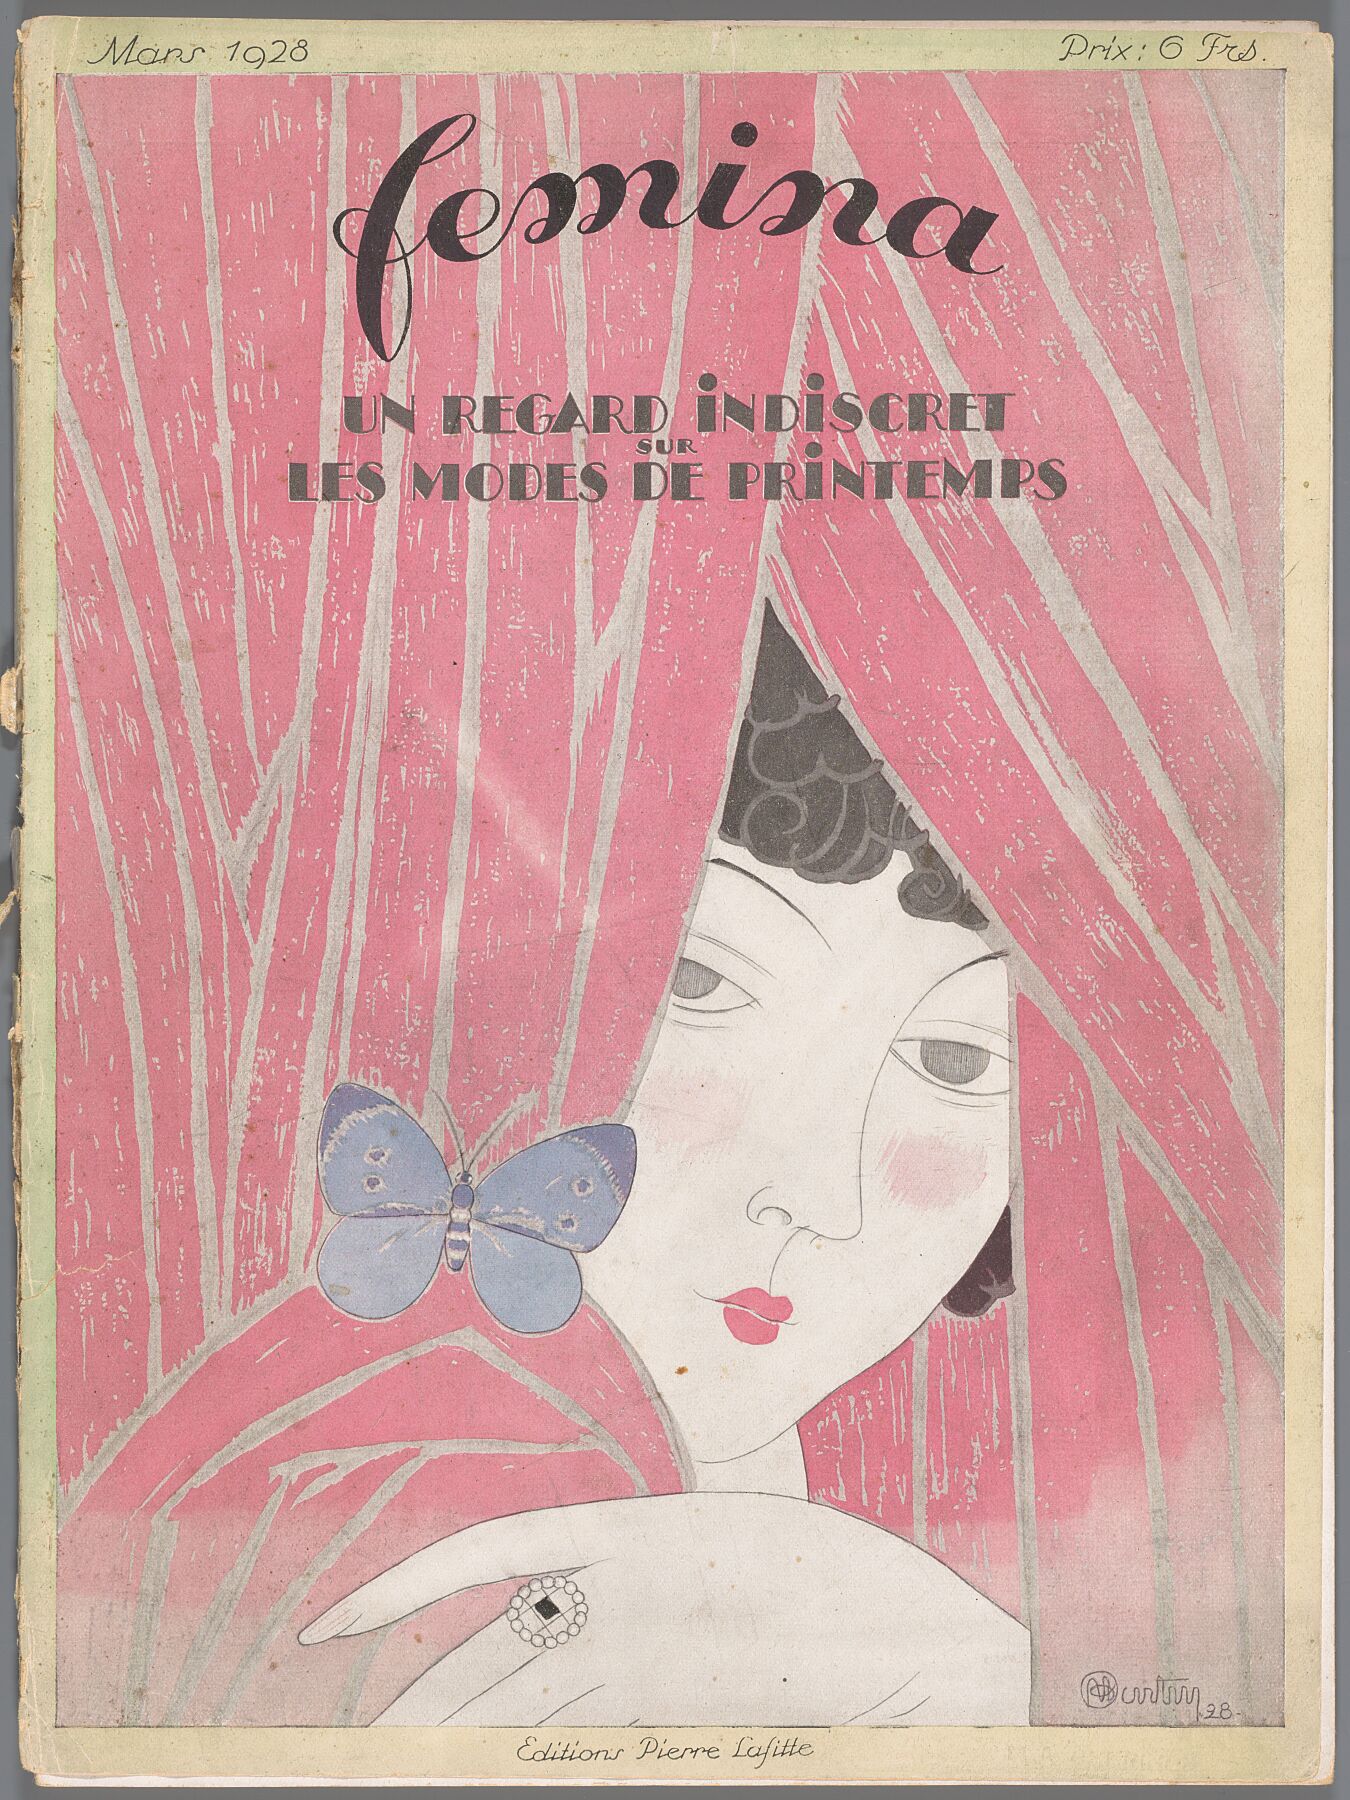 The Fashion Magazine as Temptress, 1928